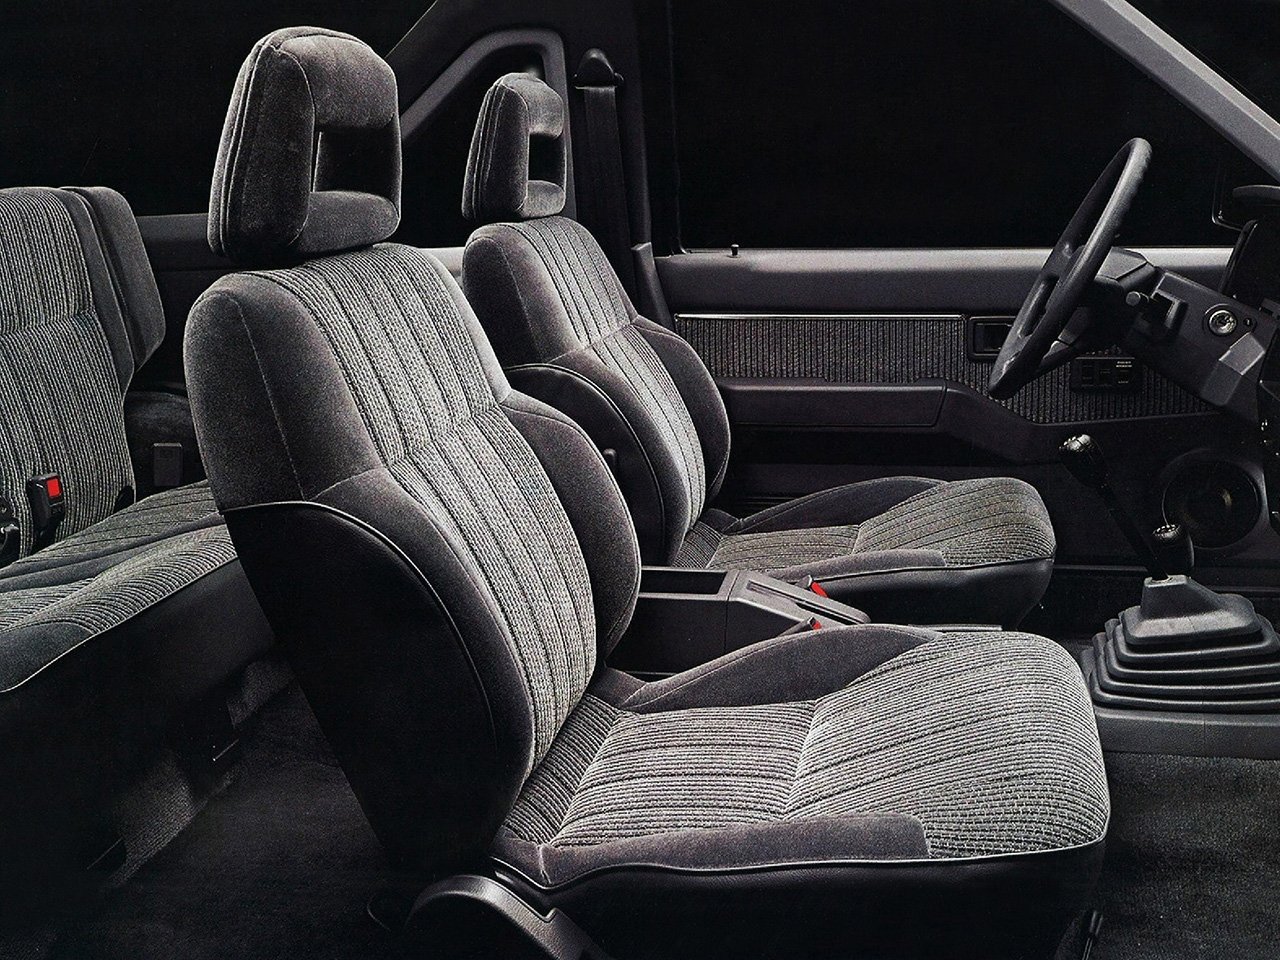 внедорожник 3 дв. Nissan Pathfinder 1986 - 1997г выпуска модификация 2.4 MT (103 л.с.) 4×4